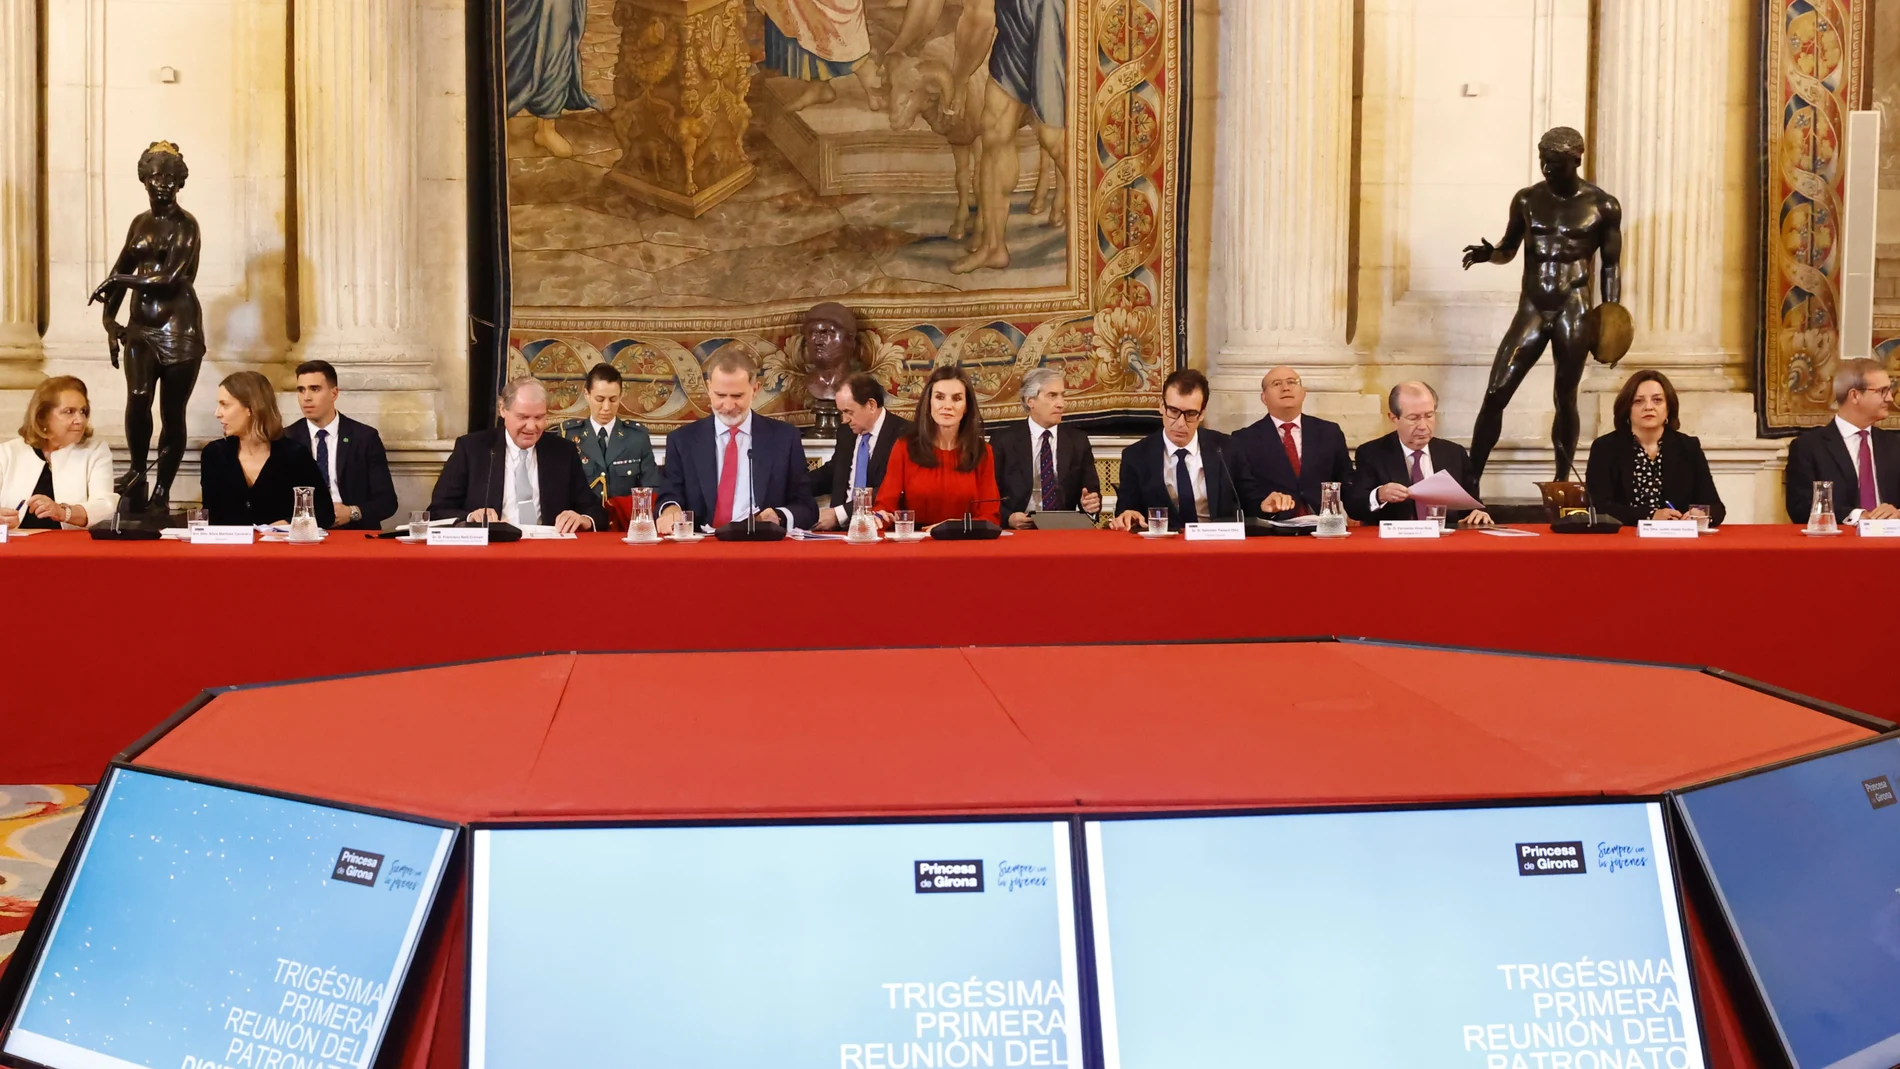 Los Reyes presiden la reunión del Patronato de la Fundación Princesa de Girona 